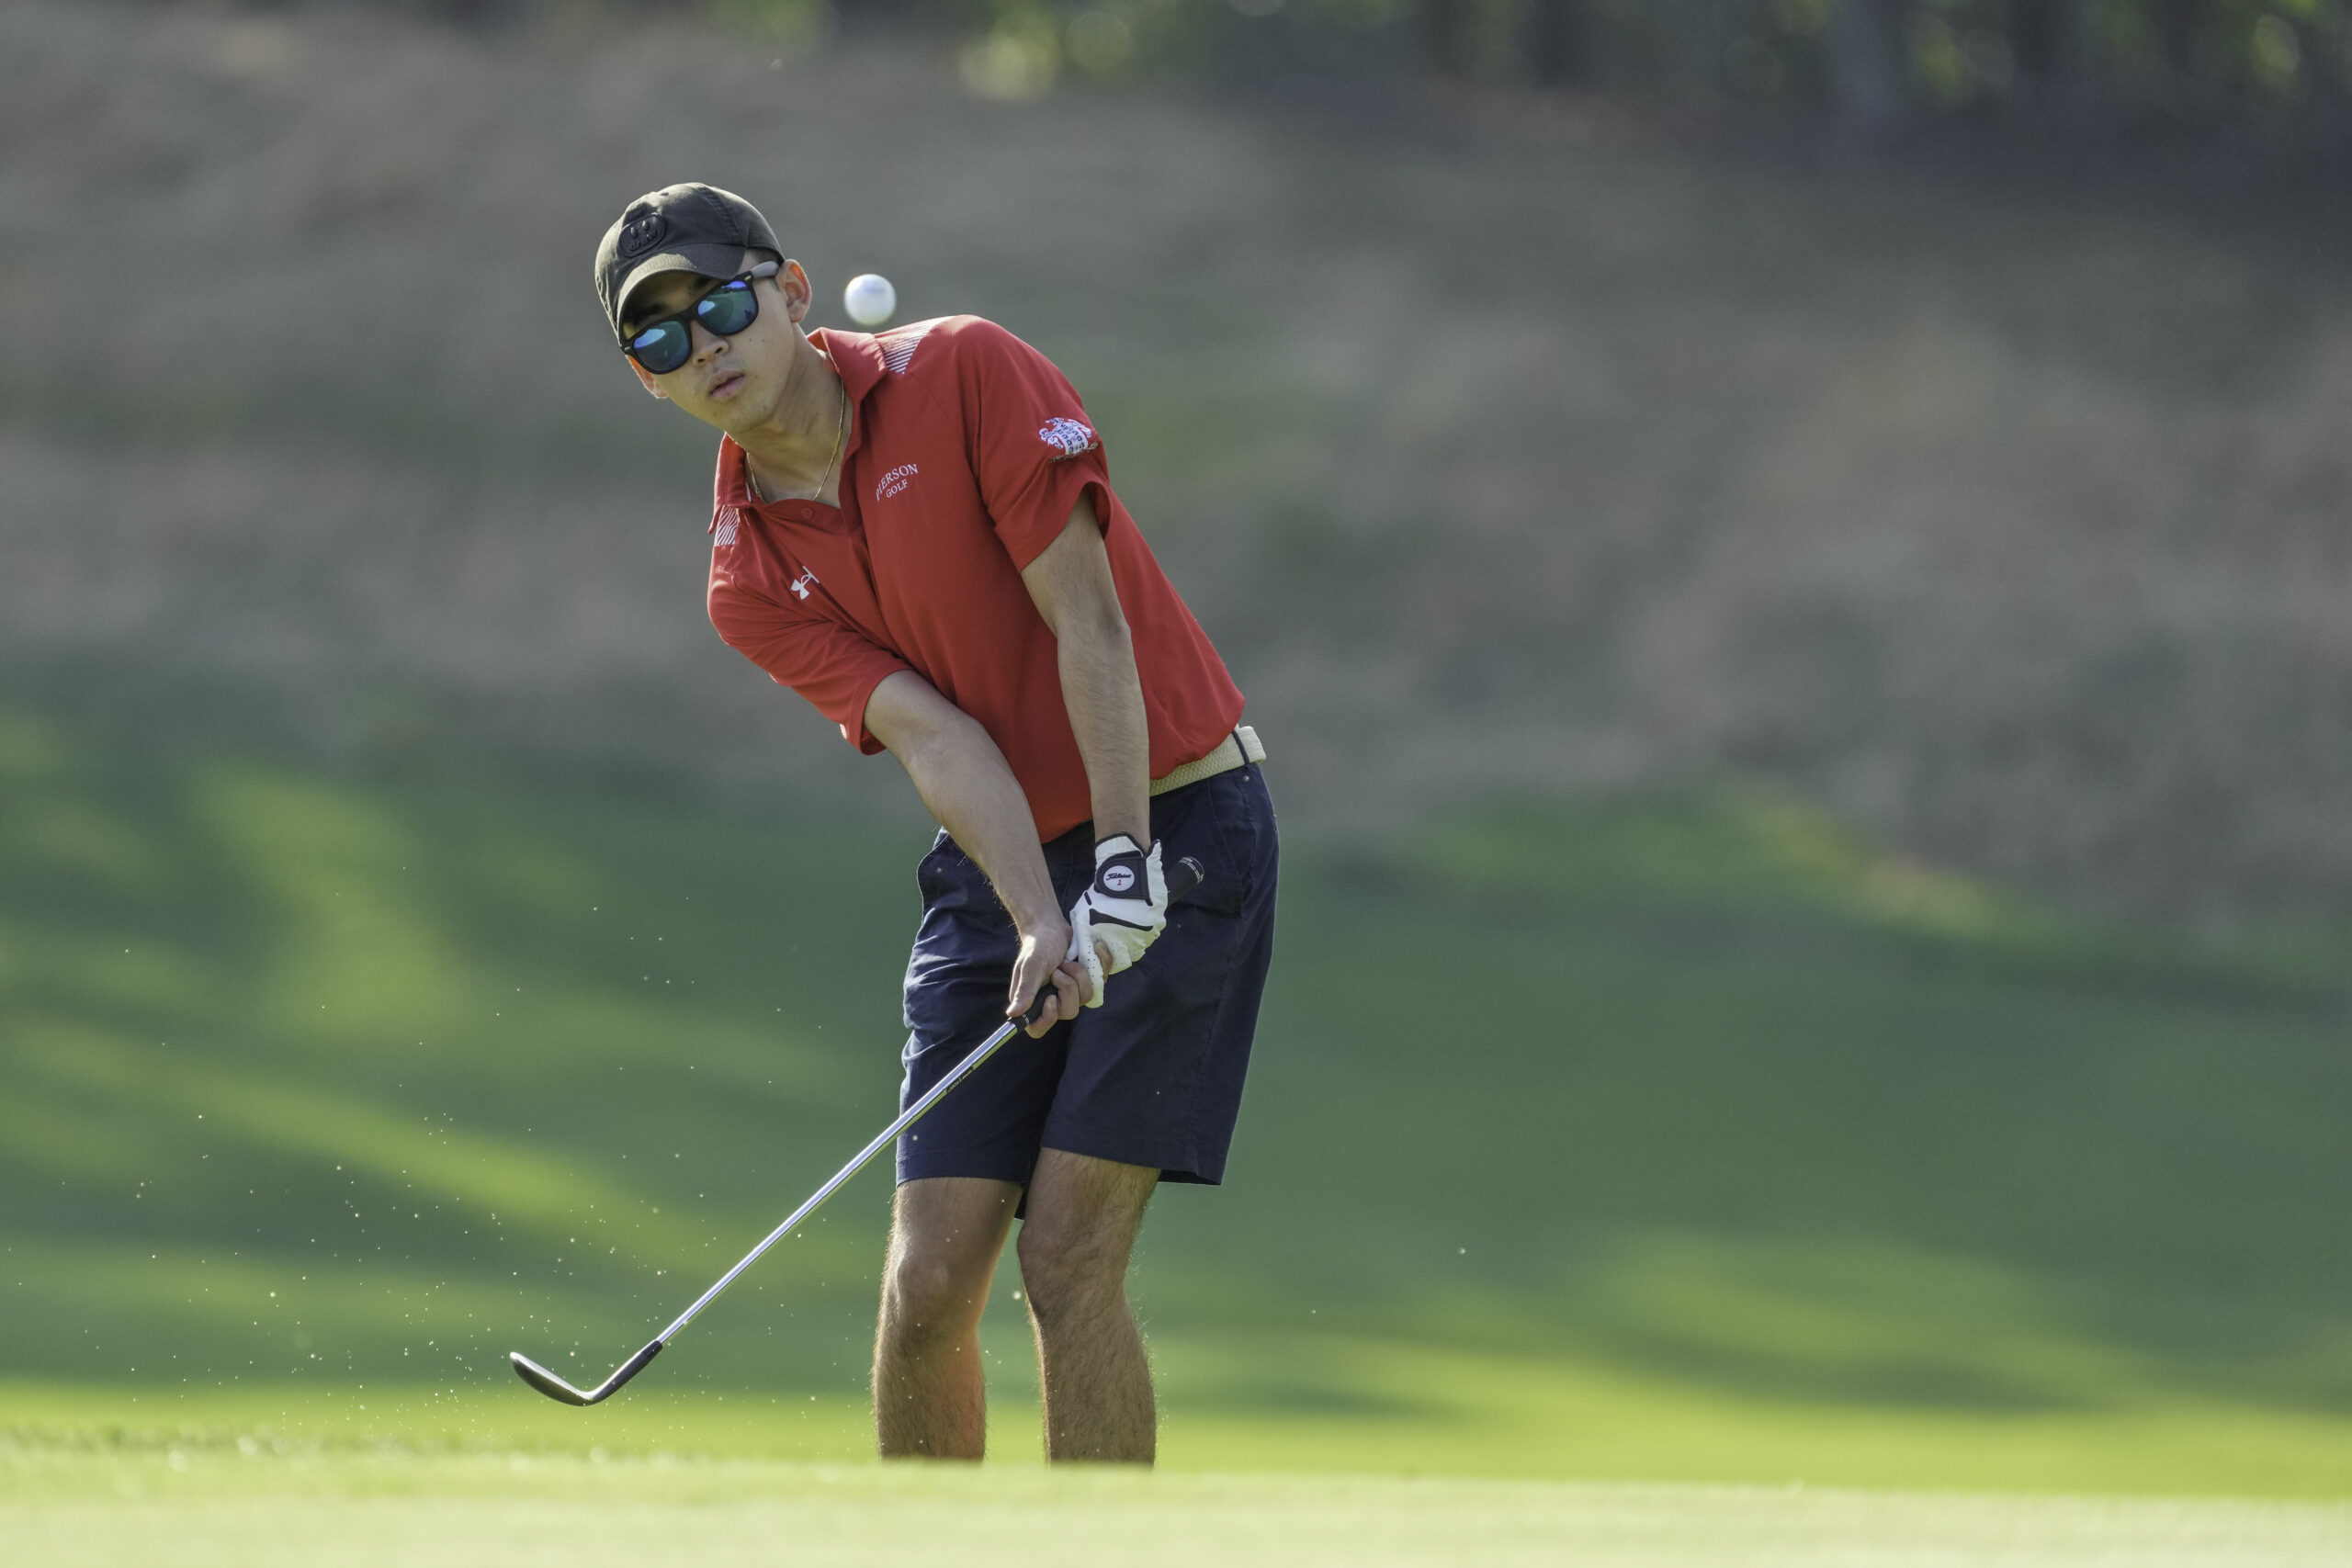 Pierson golf's Yudai Morikawa. RON ESPOSITO